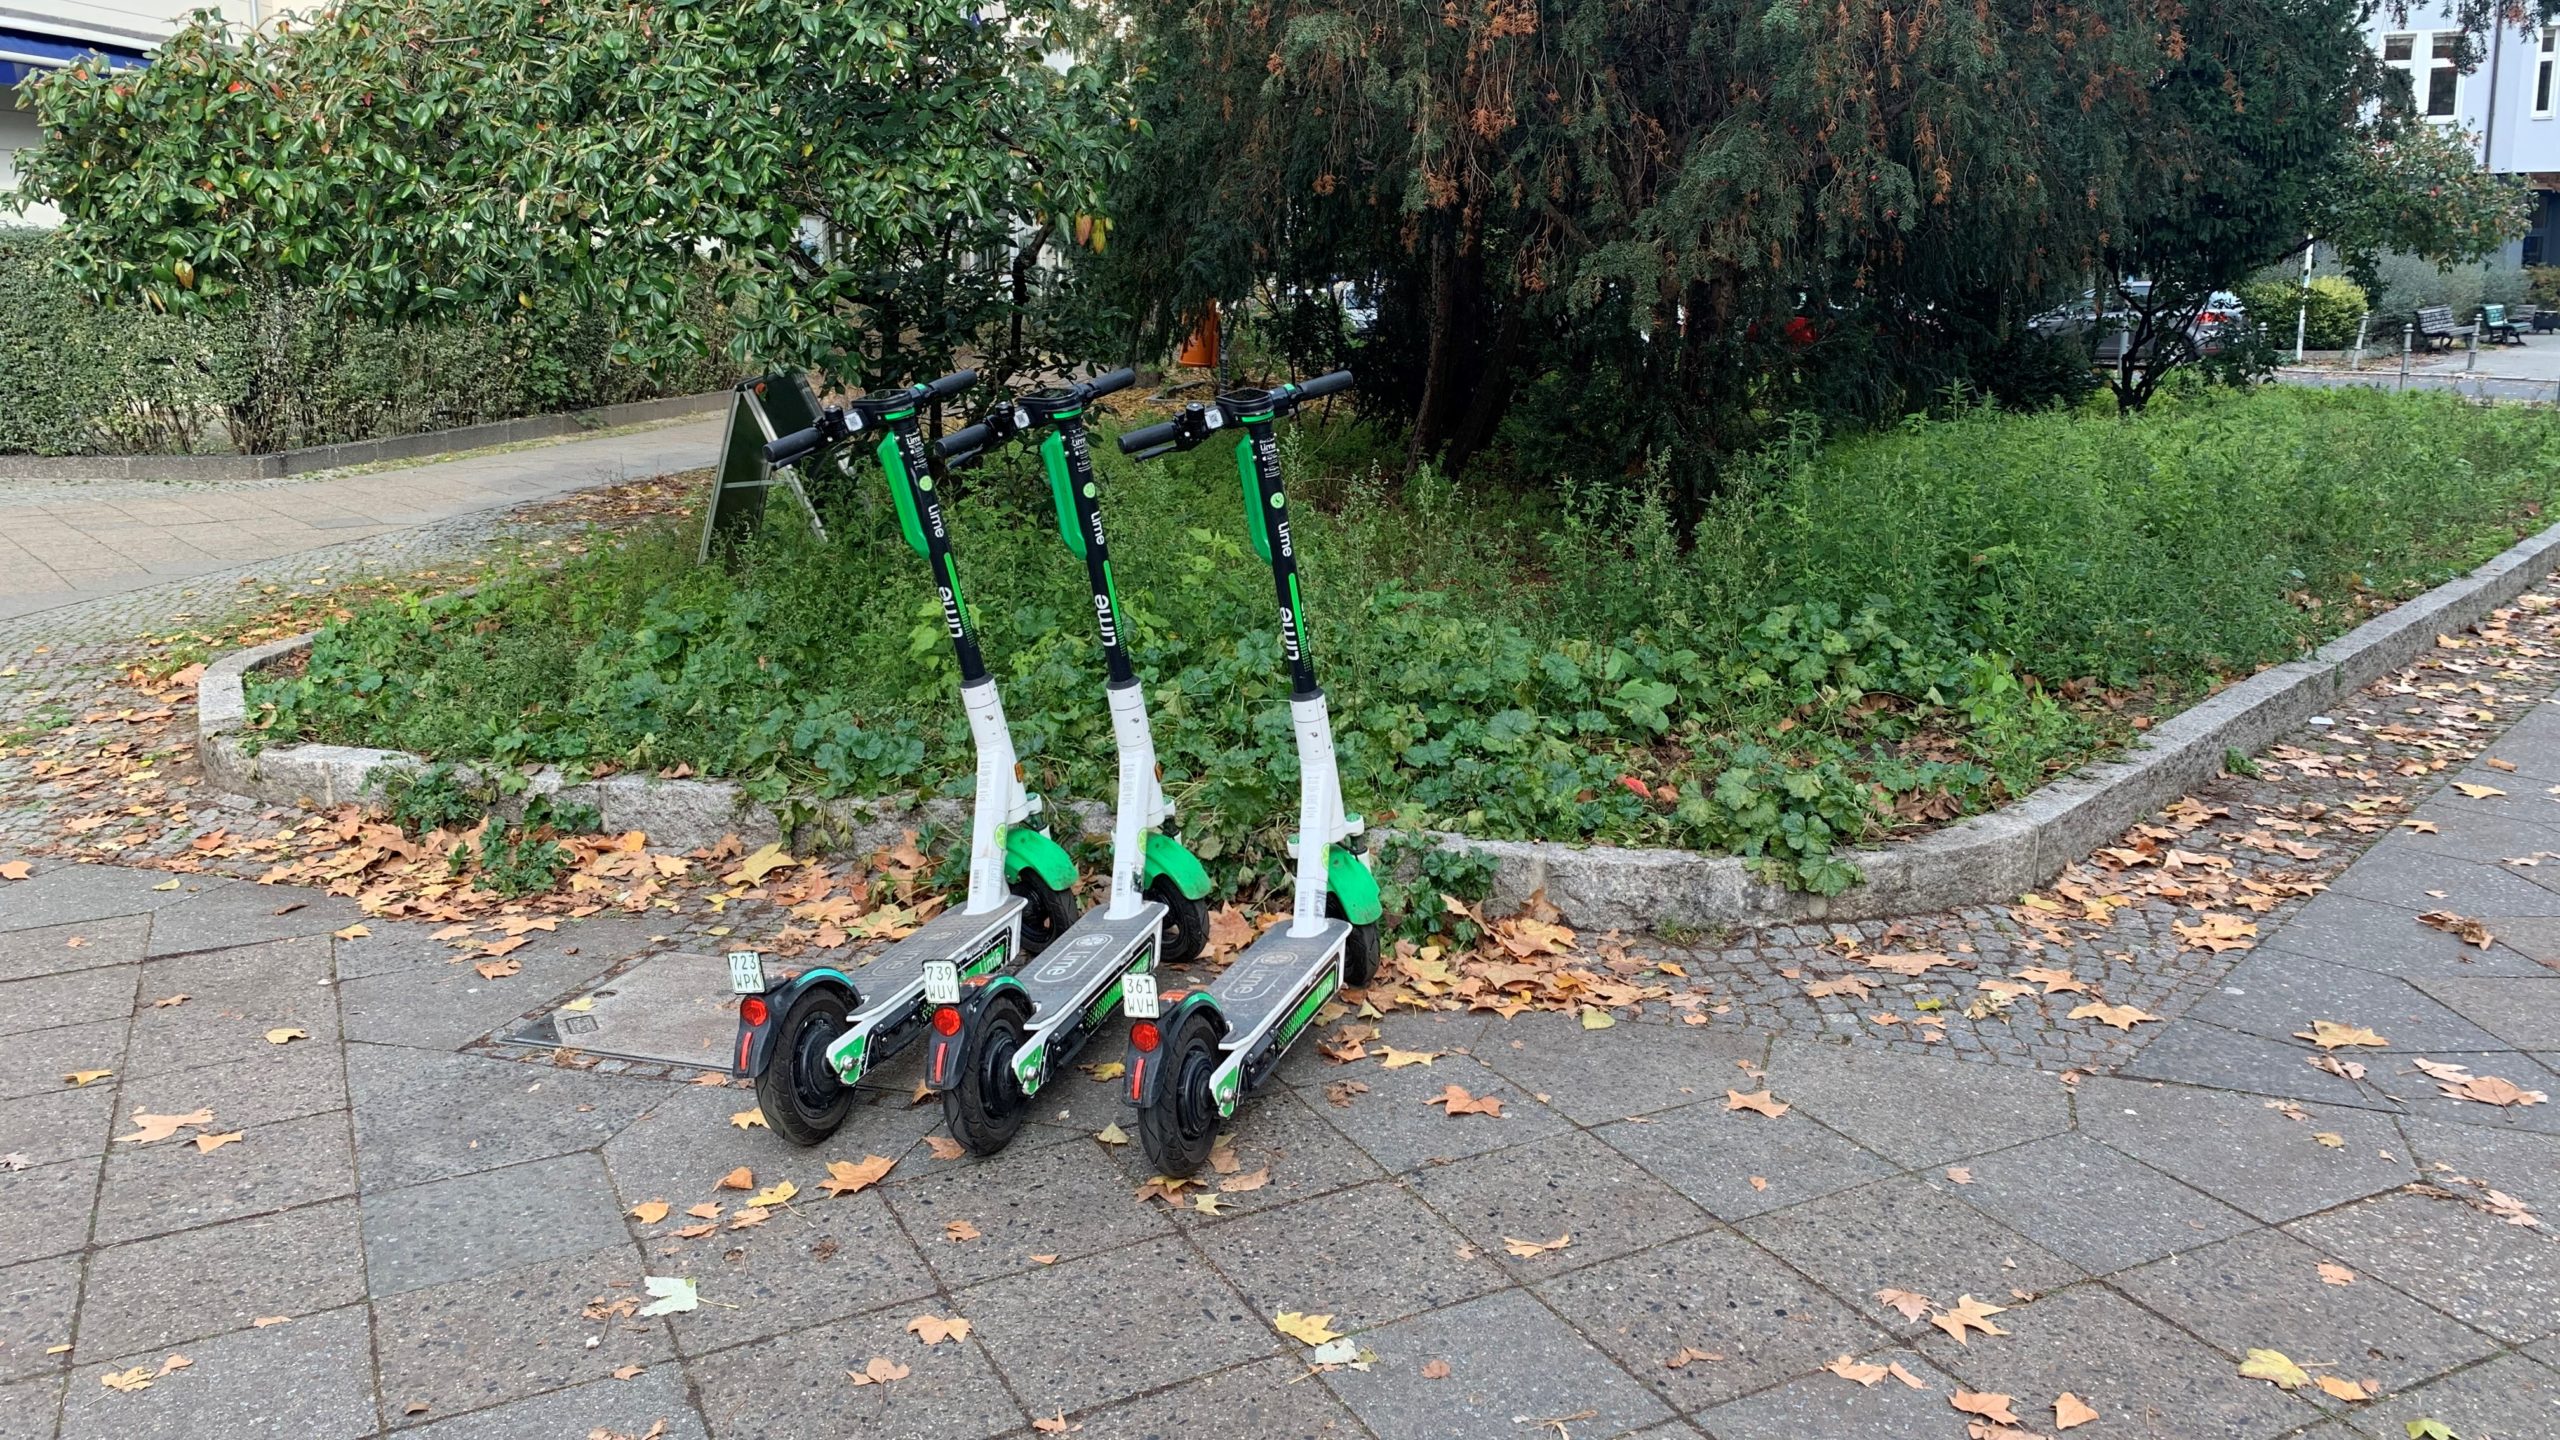 Schulkinder in Sachsen-Anhalt sollen mit E-Scootern vertraut gemacht werden. Foto: Matthias Bannert